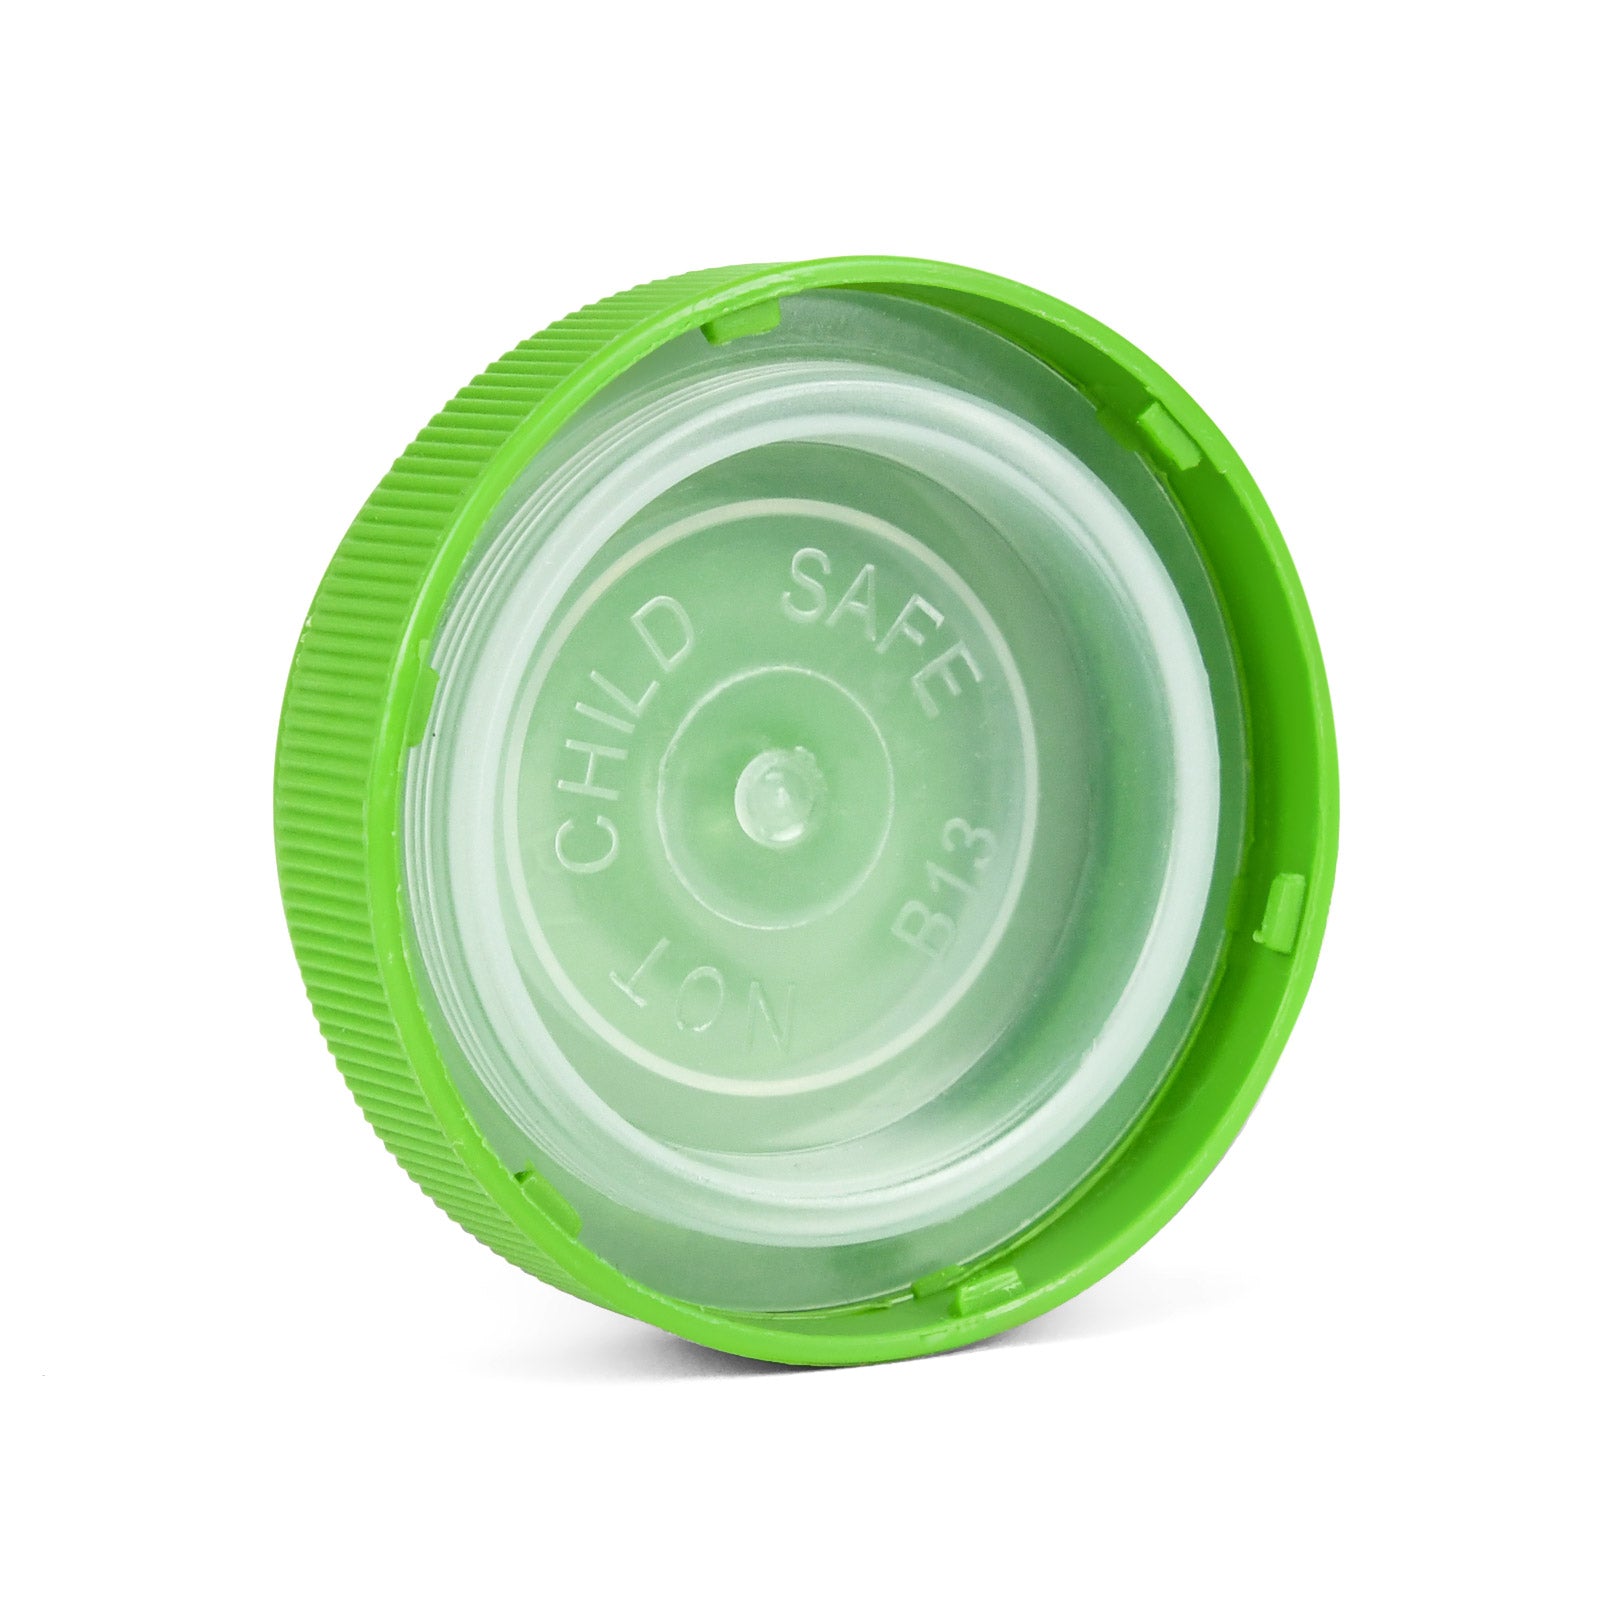 20 Dram Reversible Cap Opaque Green - 1 Count